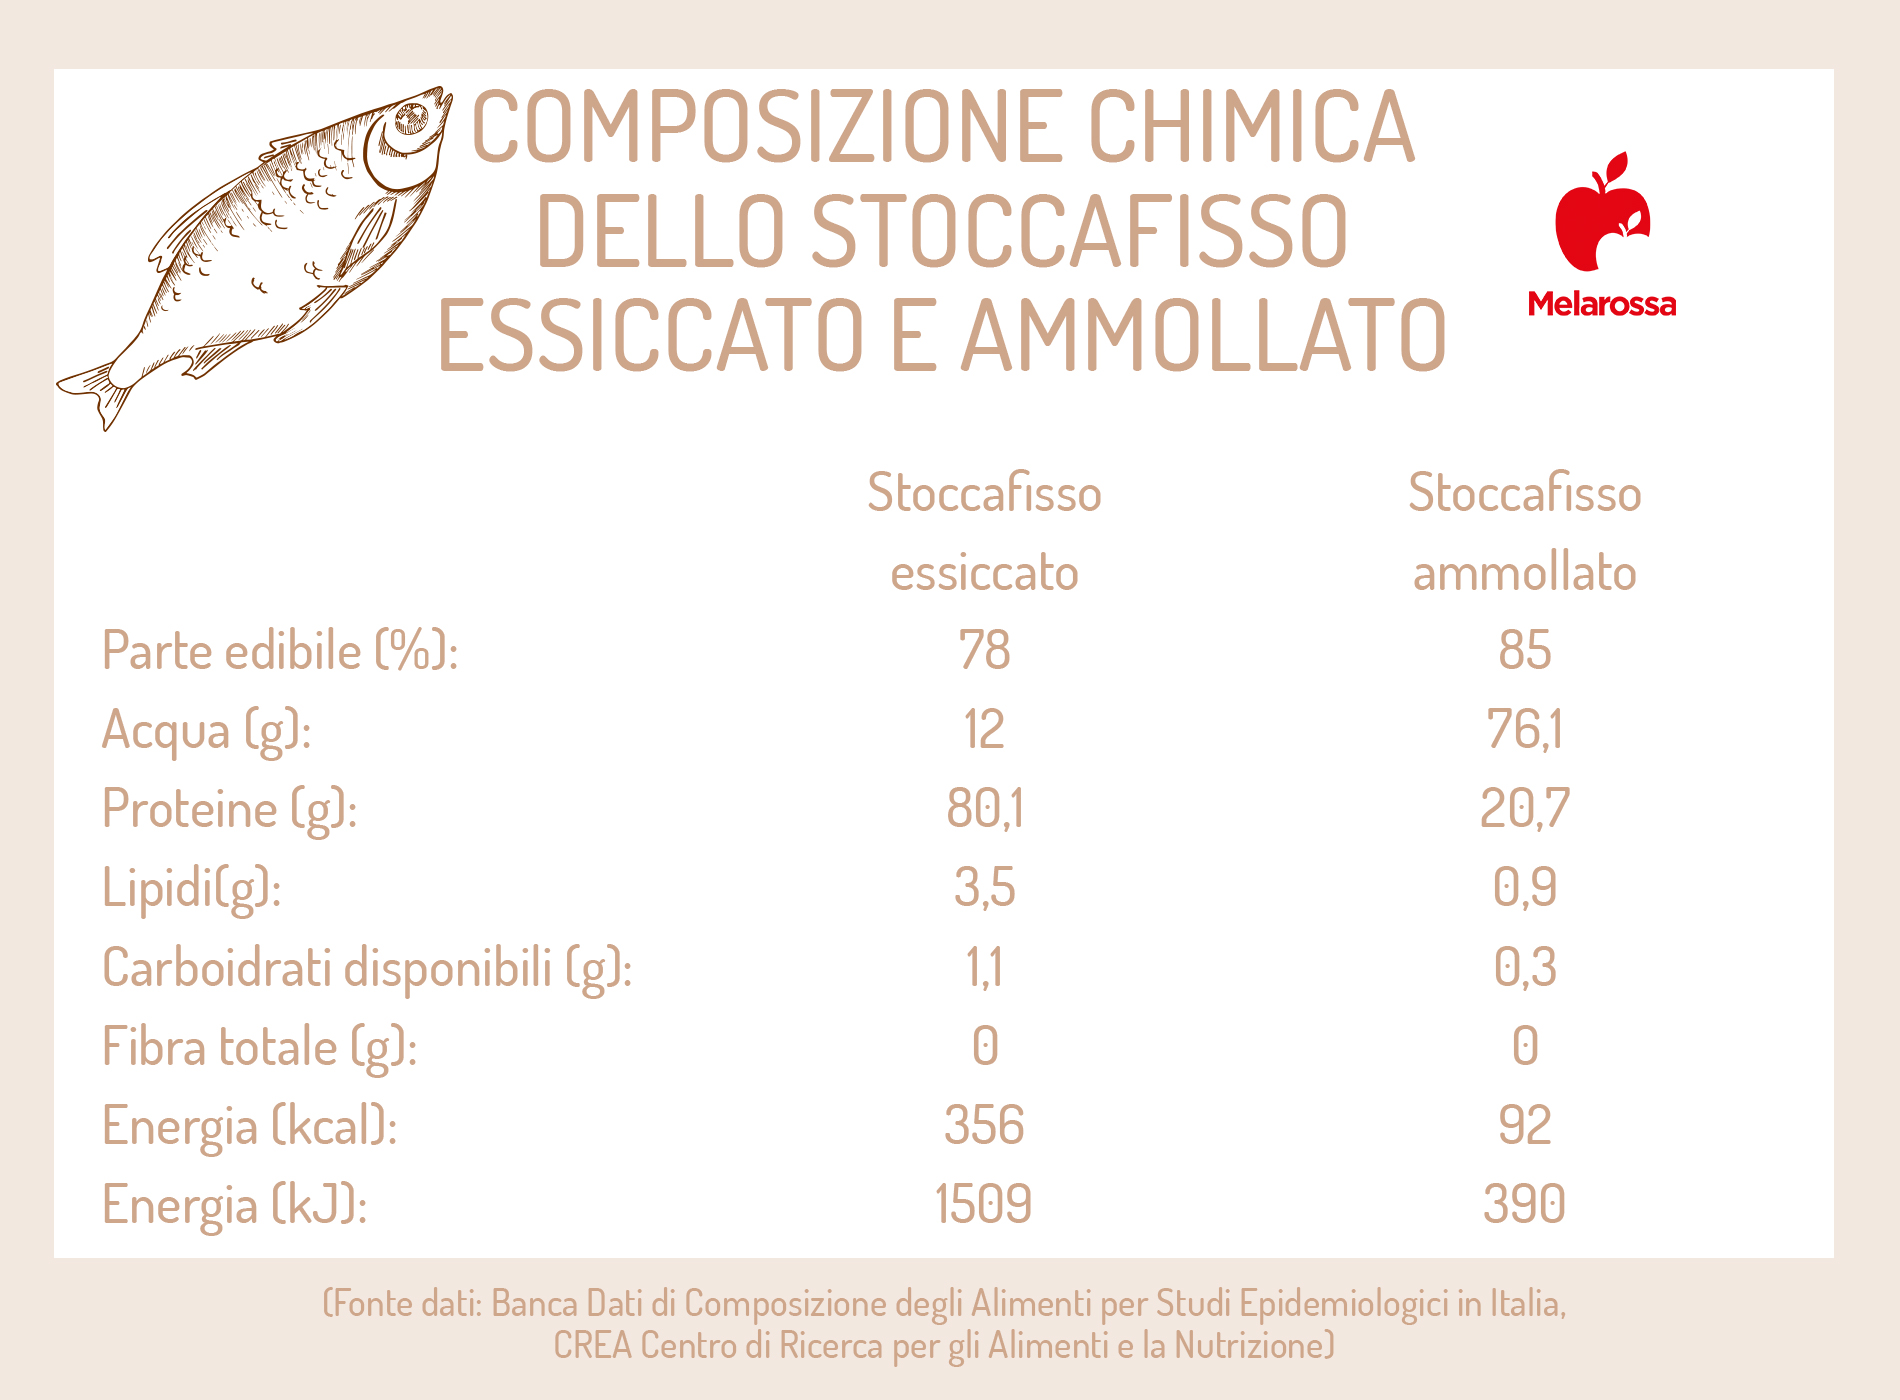 Stockfish remojado y seco: diferencias nutricionales